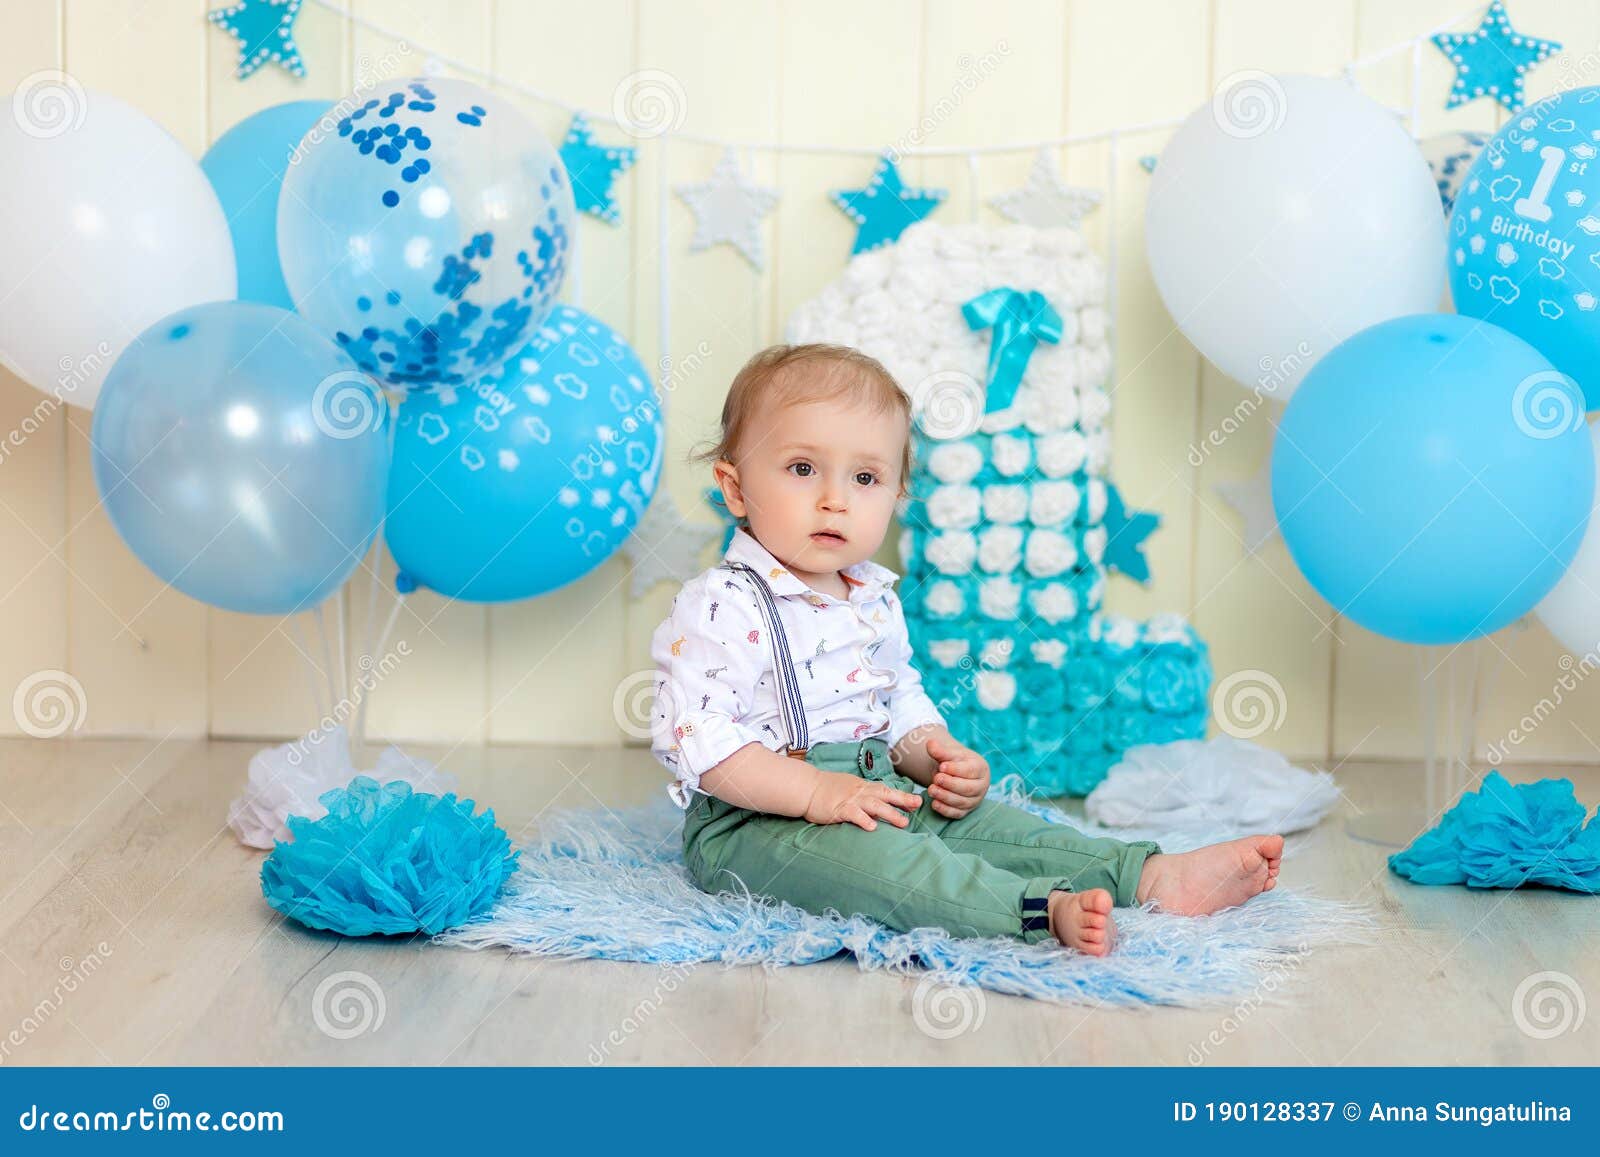 esta ahí Burro Posteridad Bebé Celebra 1 Año Con Pastel Y Globos Feliz Cumpleaños De Niños De La  Infancia Imagen de archivo - Imagen de hermoso, coma: 190128337